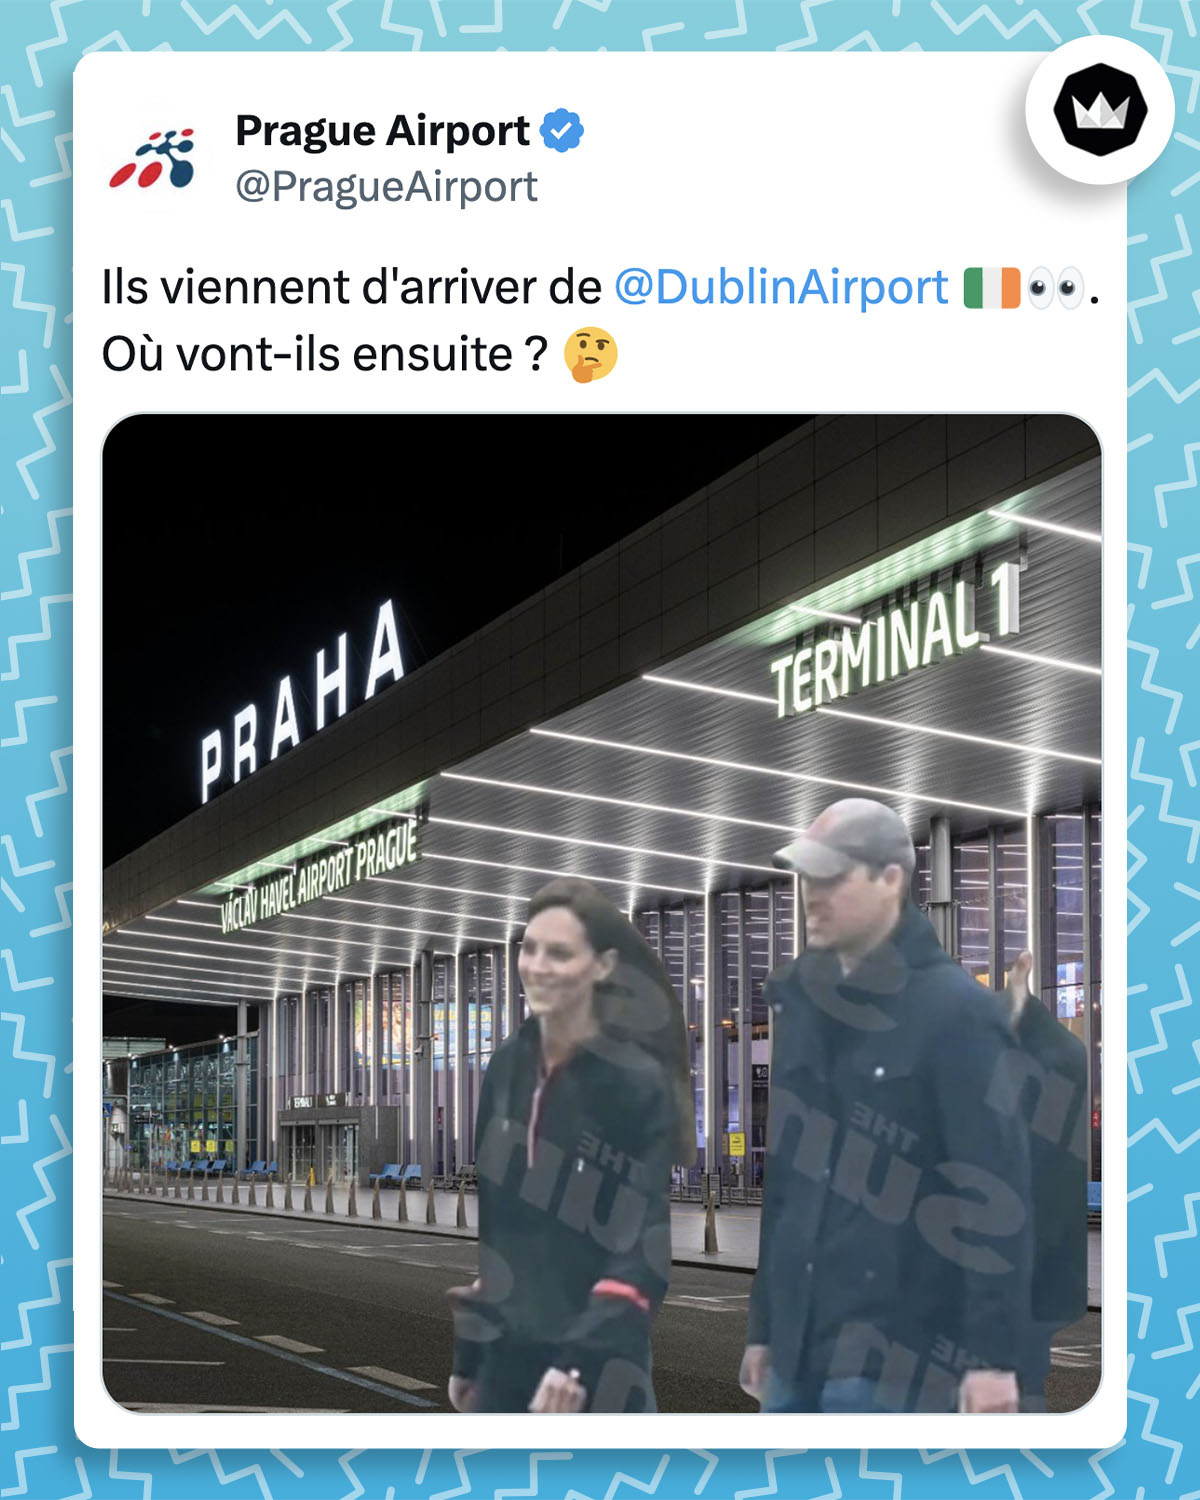 @PragueAirport :
"Ils viennent d'arriver de 
@DublinAirport
 🇮🇪👀. Où vont-ils ensuite ? 🤔"
Avec un photomontage de Kate Middleton et du Prince William à l'aéroport de Prague.